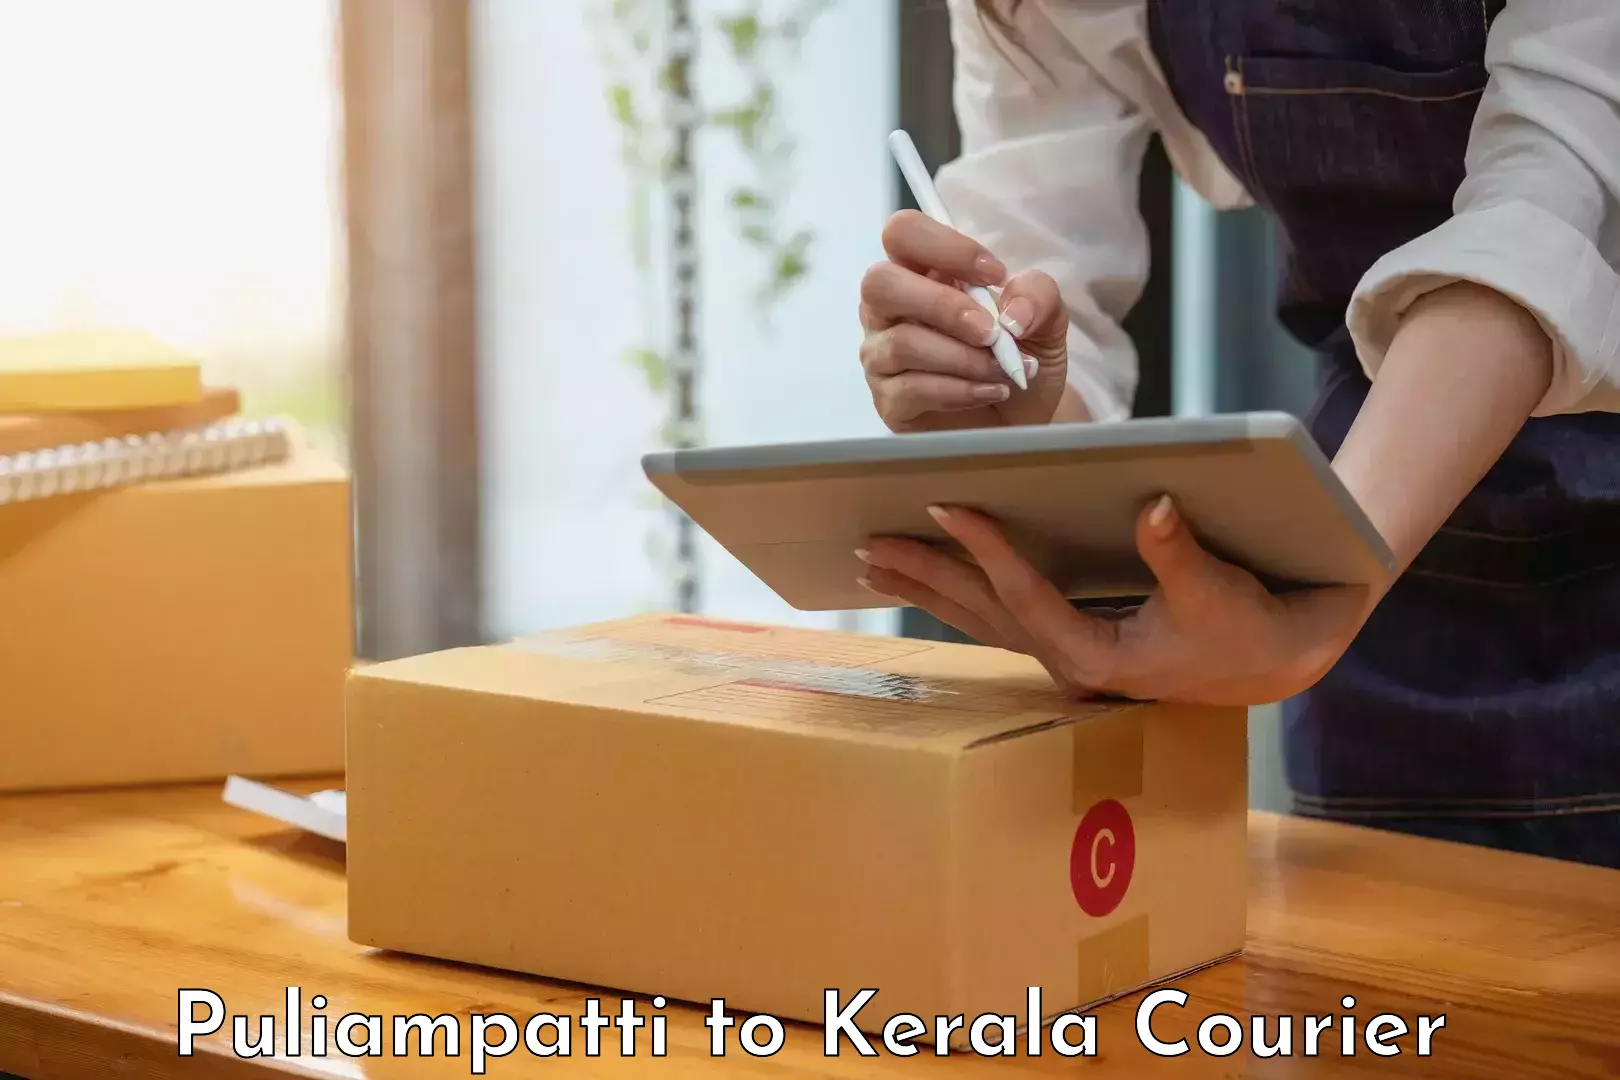 Reliable delivery network Puliampatti to Mundakayam